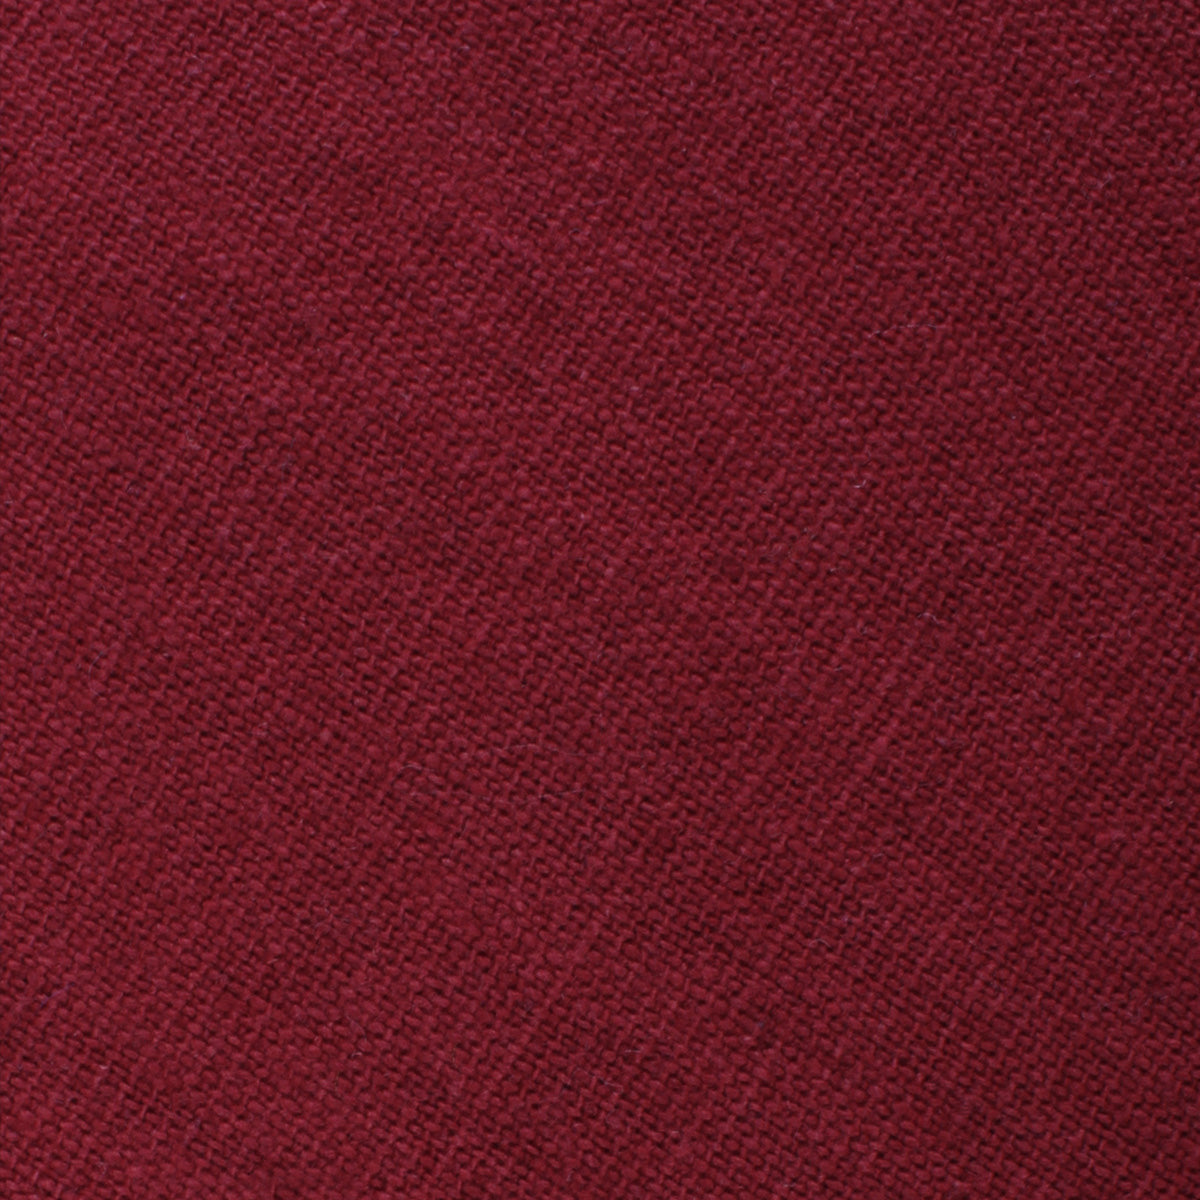 Carmine Burgundy Linen Self Bow Tie Fabric